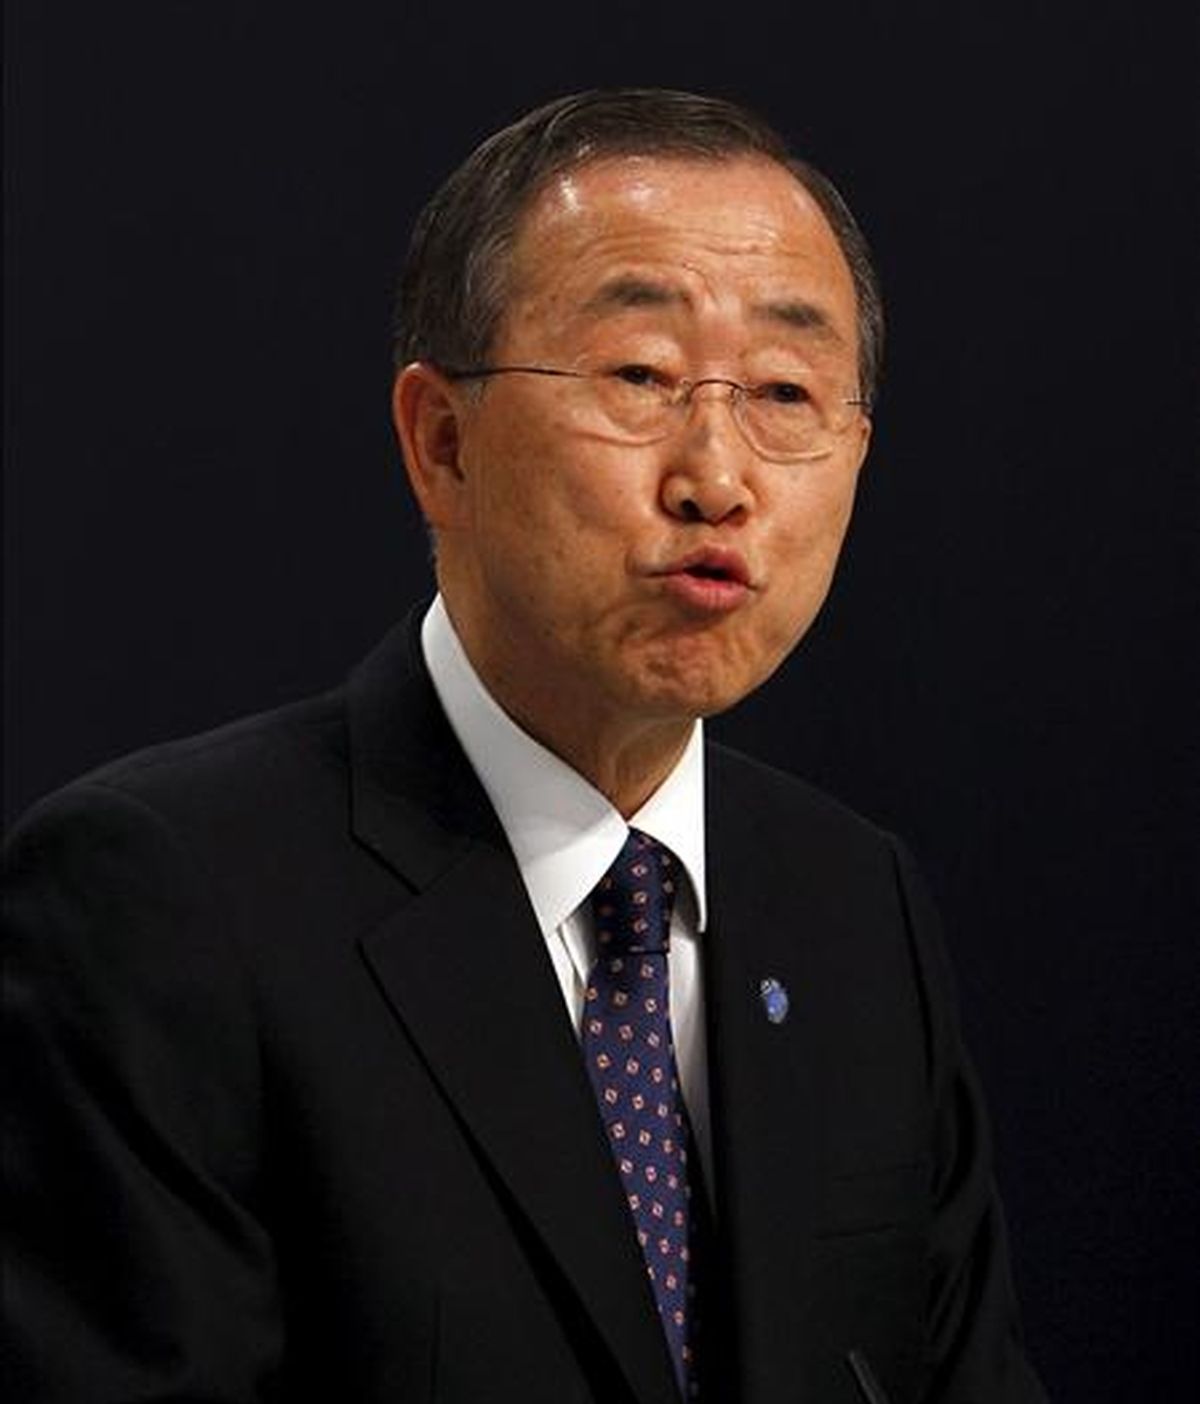 En la imagen, el secretario general de la ONU, Ban Ki-moon. EFE/Archivo